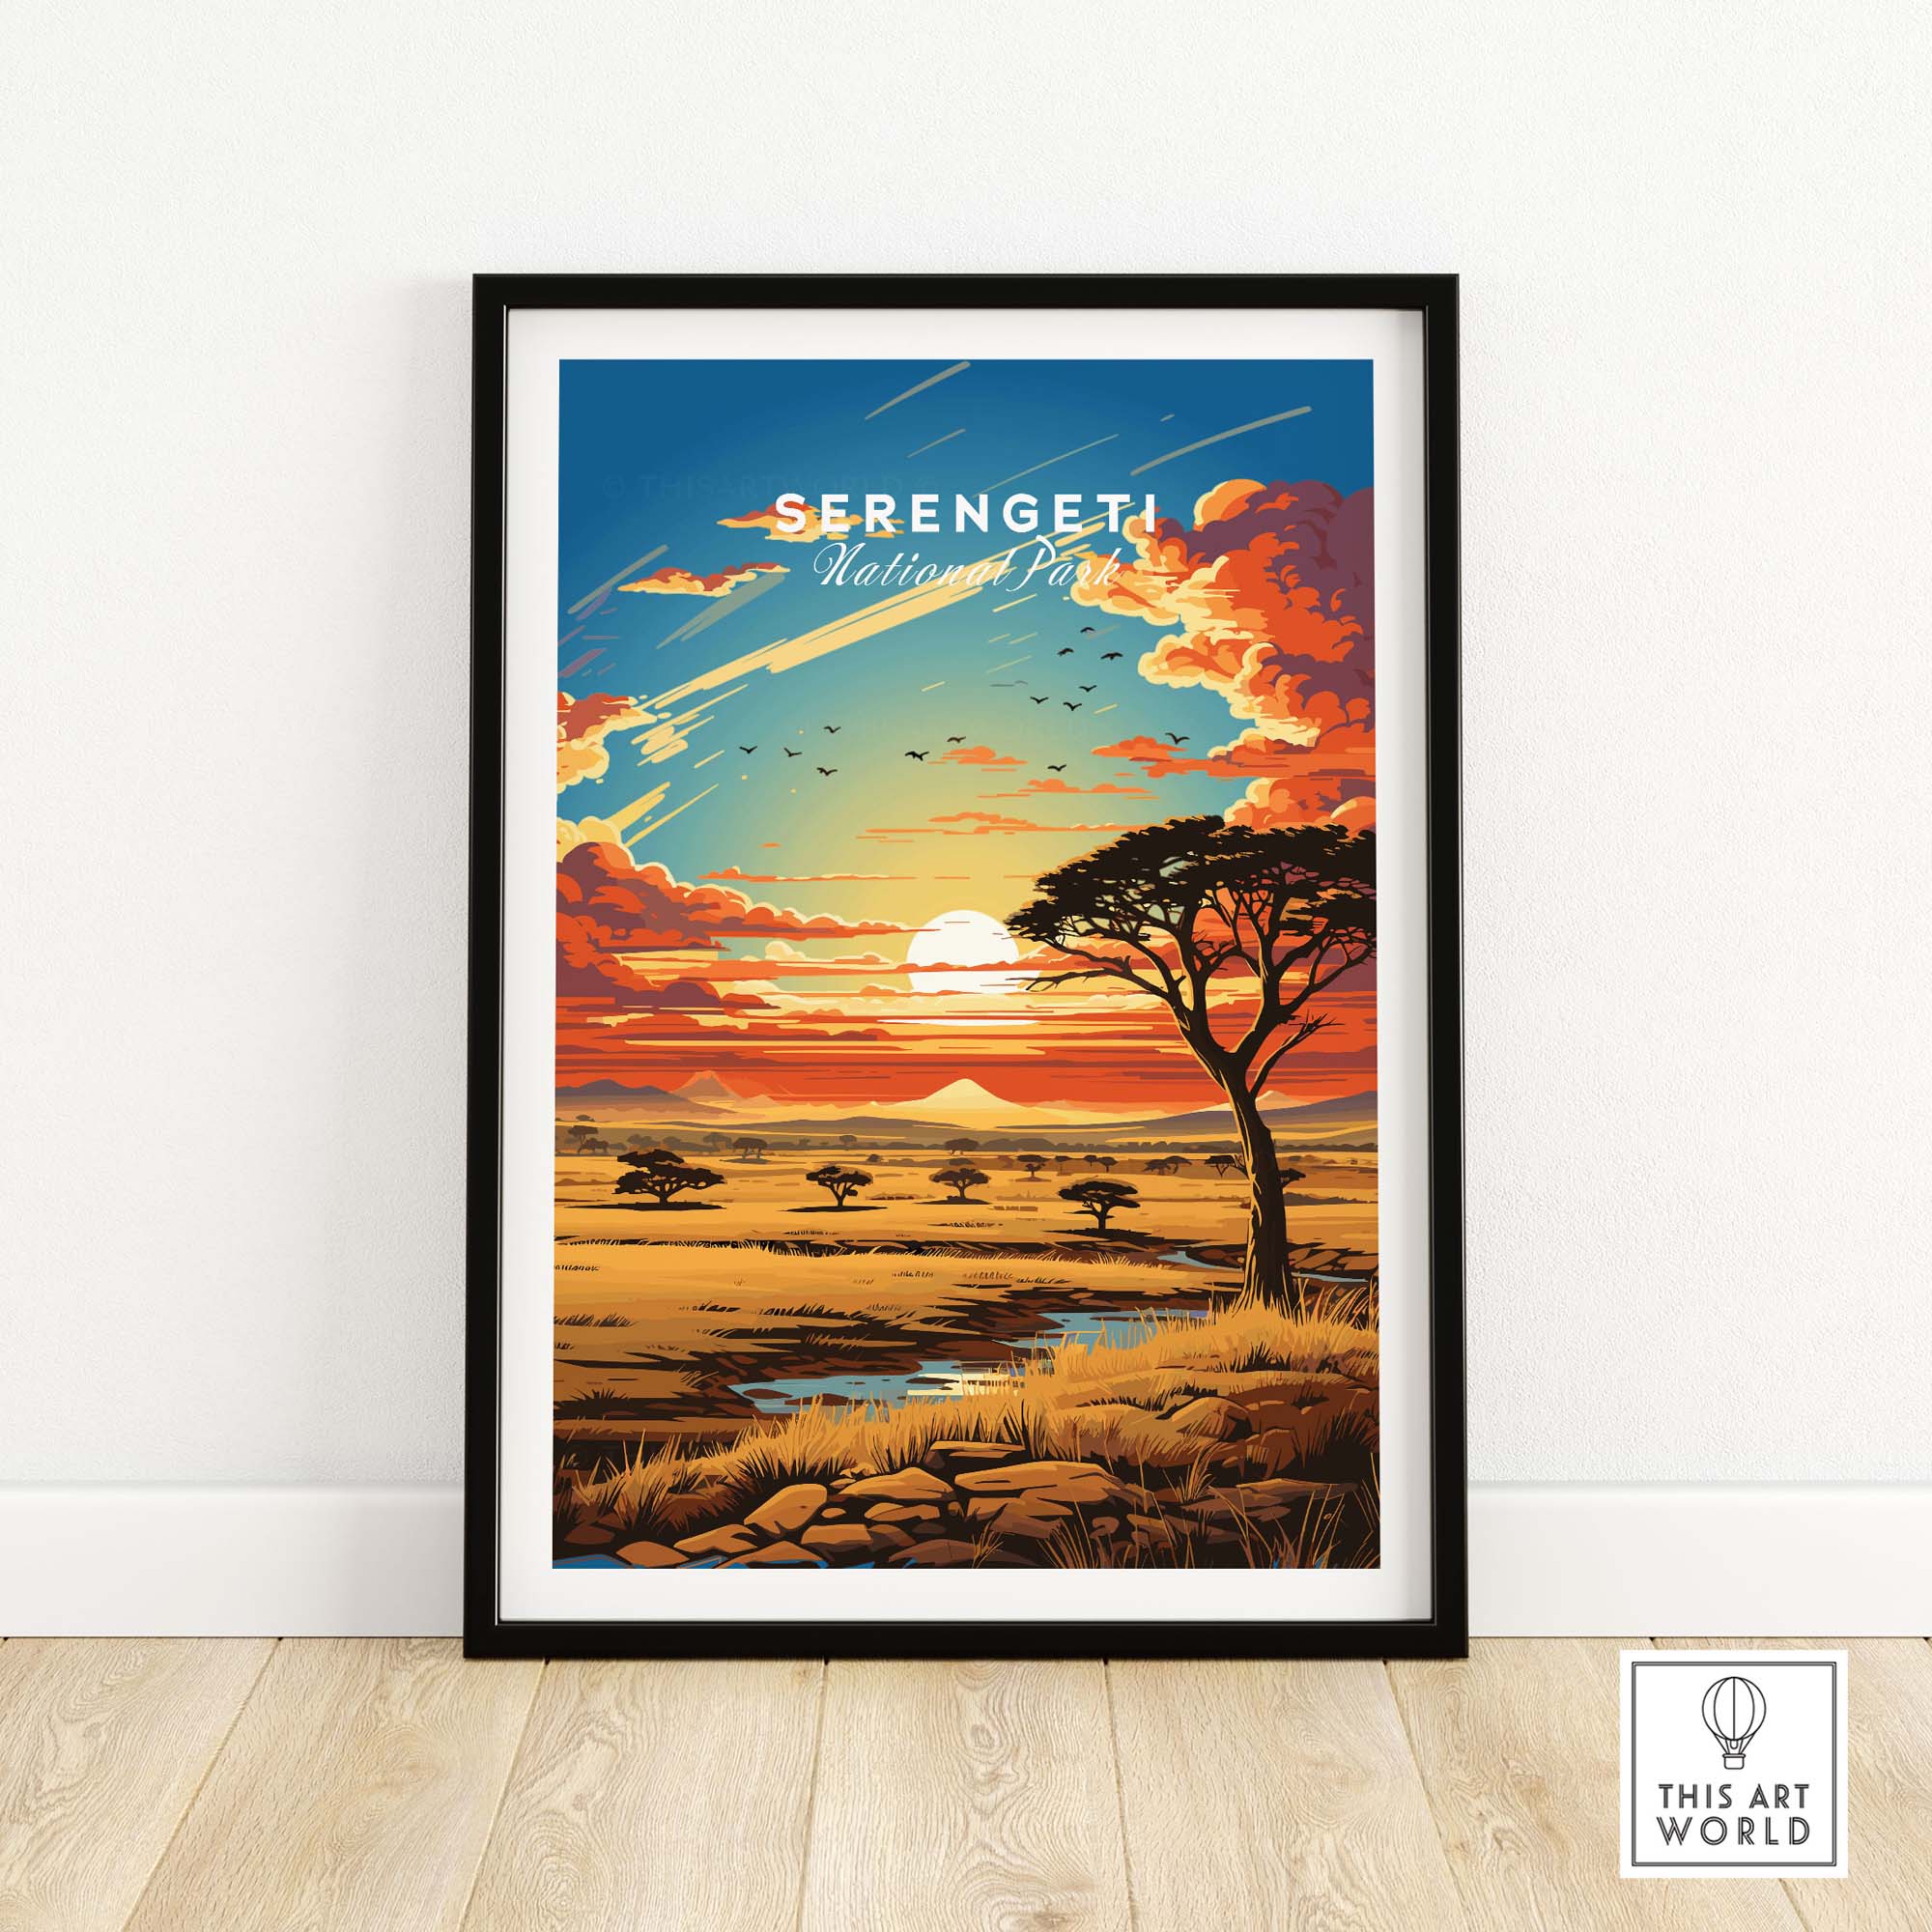 Serengeti Travel Poster